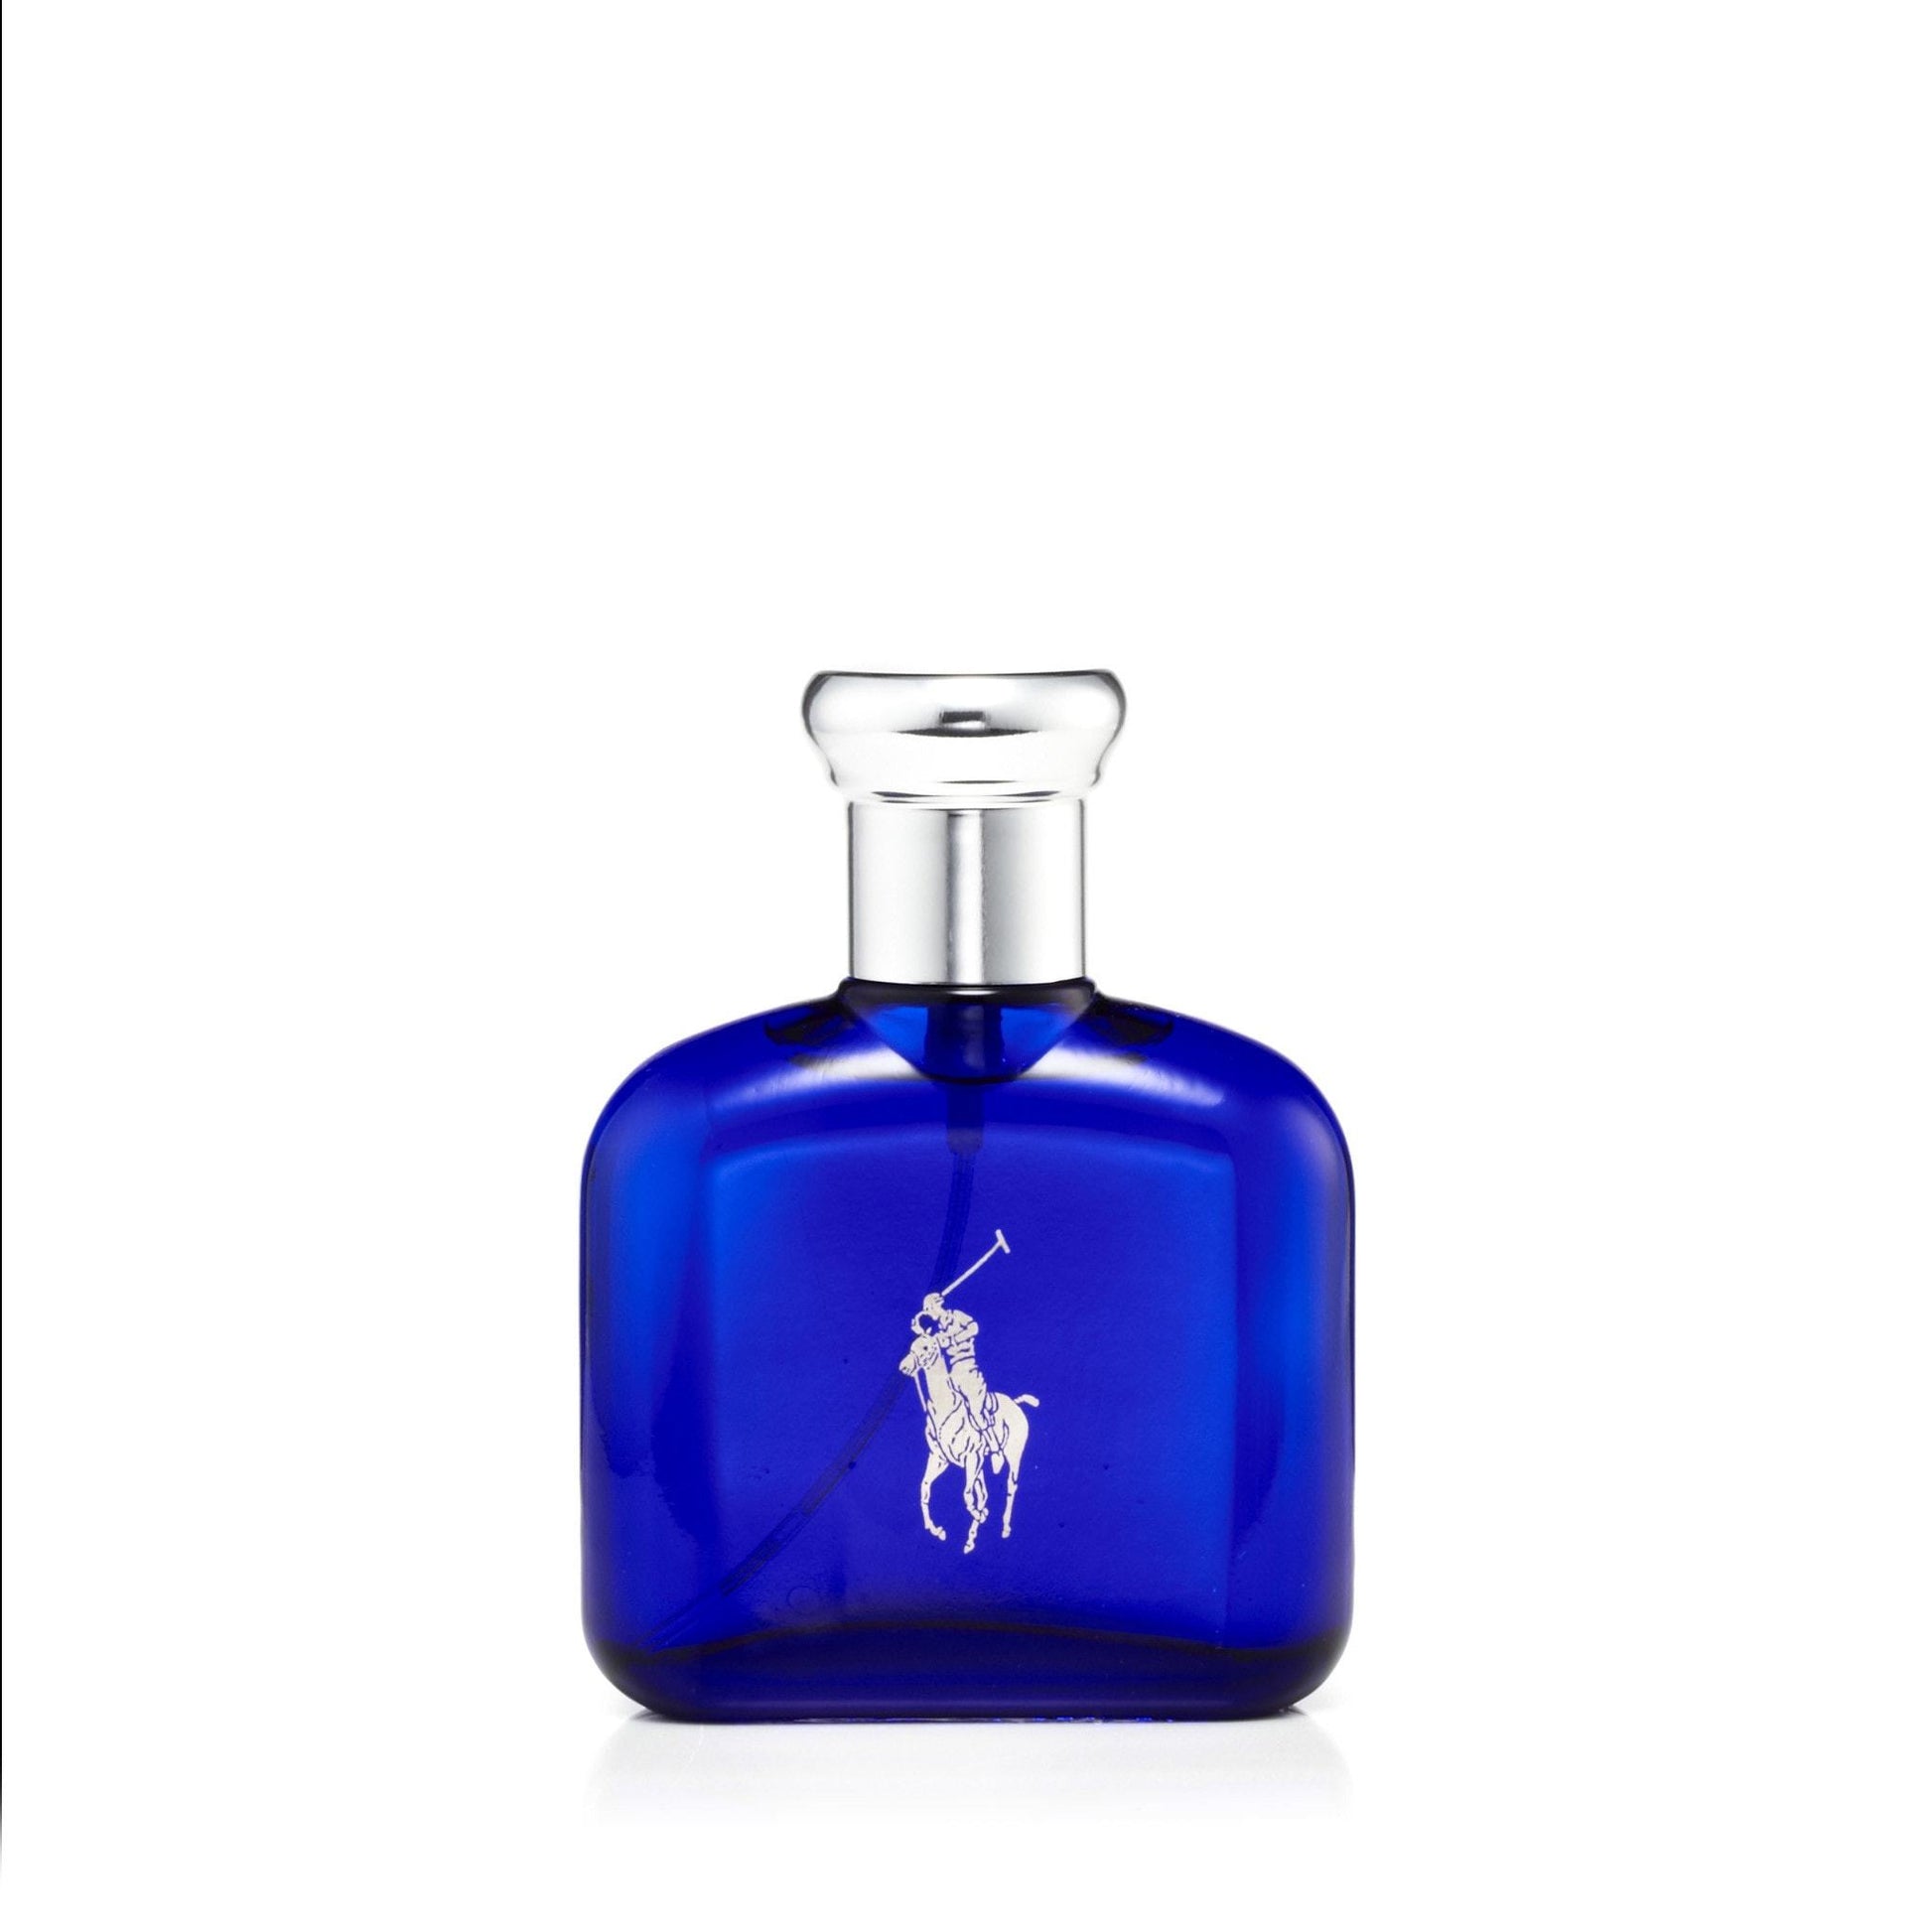 Polo Blue Eau de Toilette Spray for Men by Ralph Lauren, Product image 3